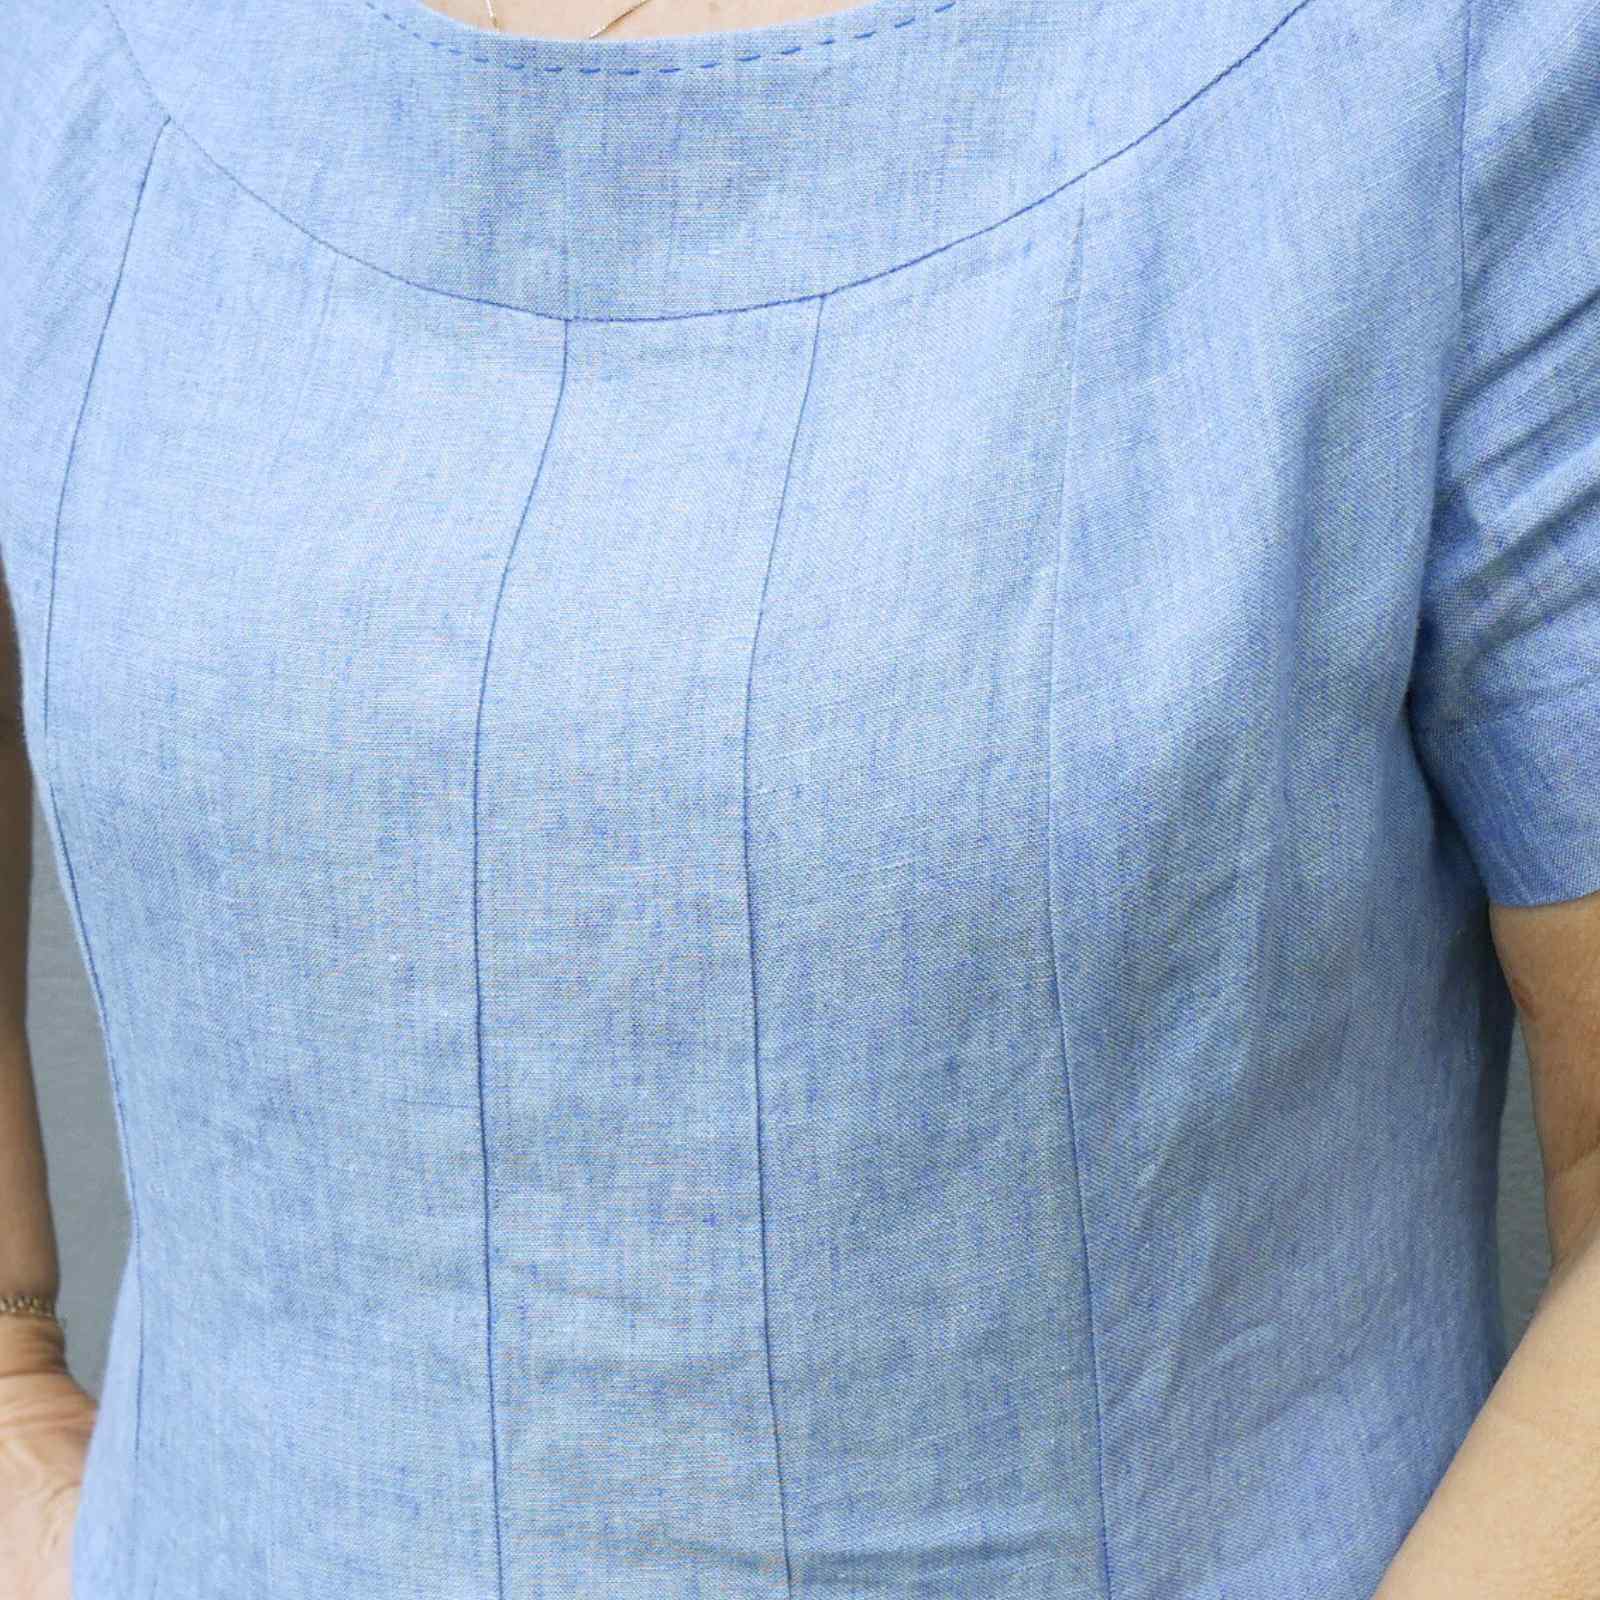 Nærbillede af syninger over brystet på lyseblå hørkjole